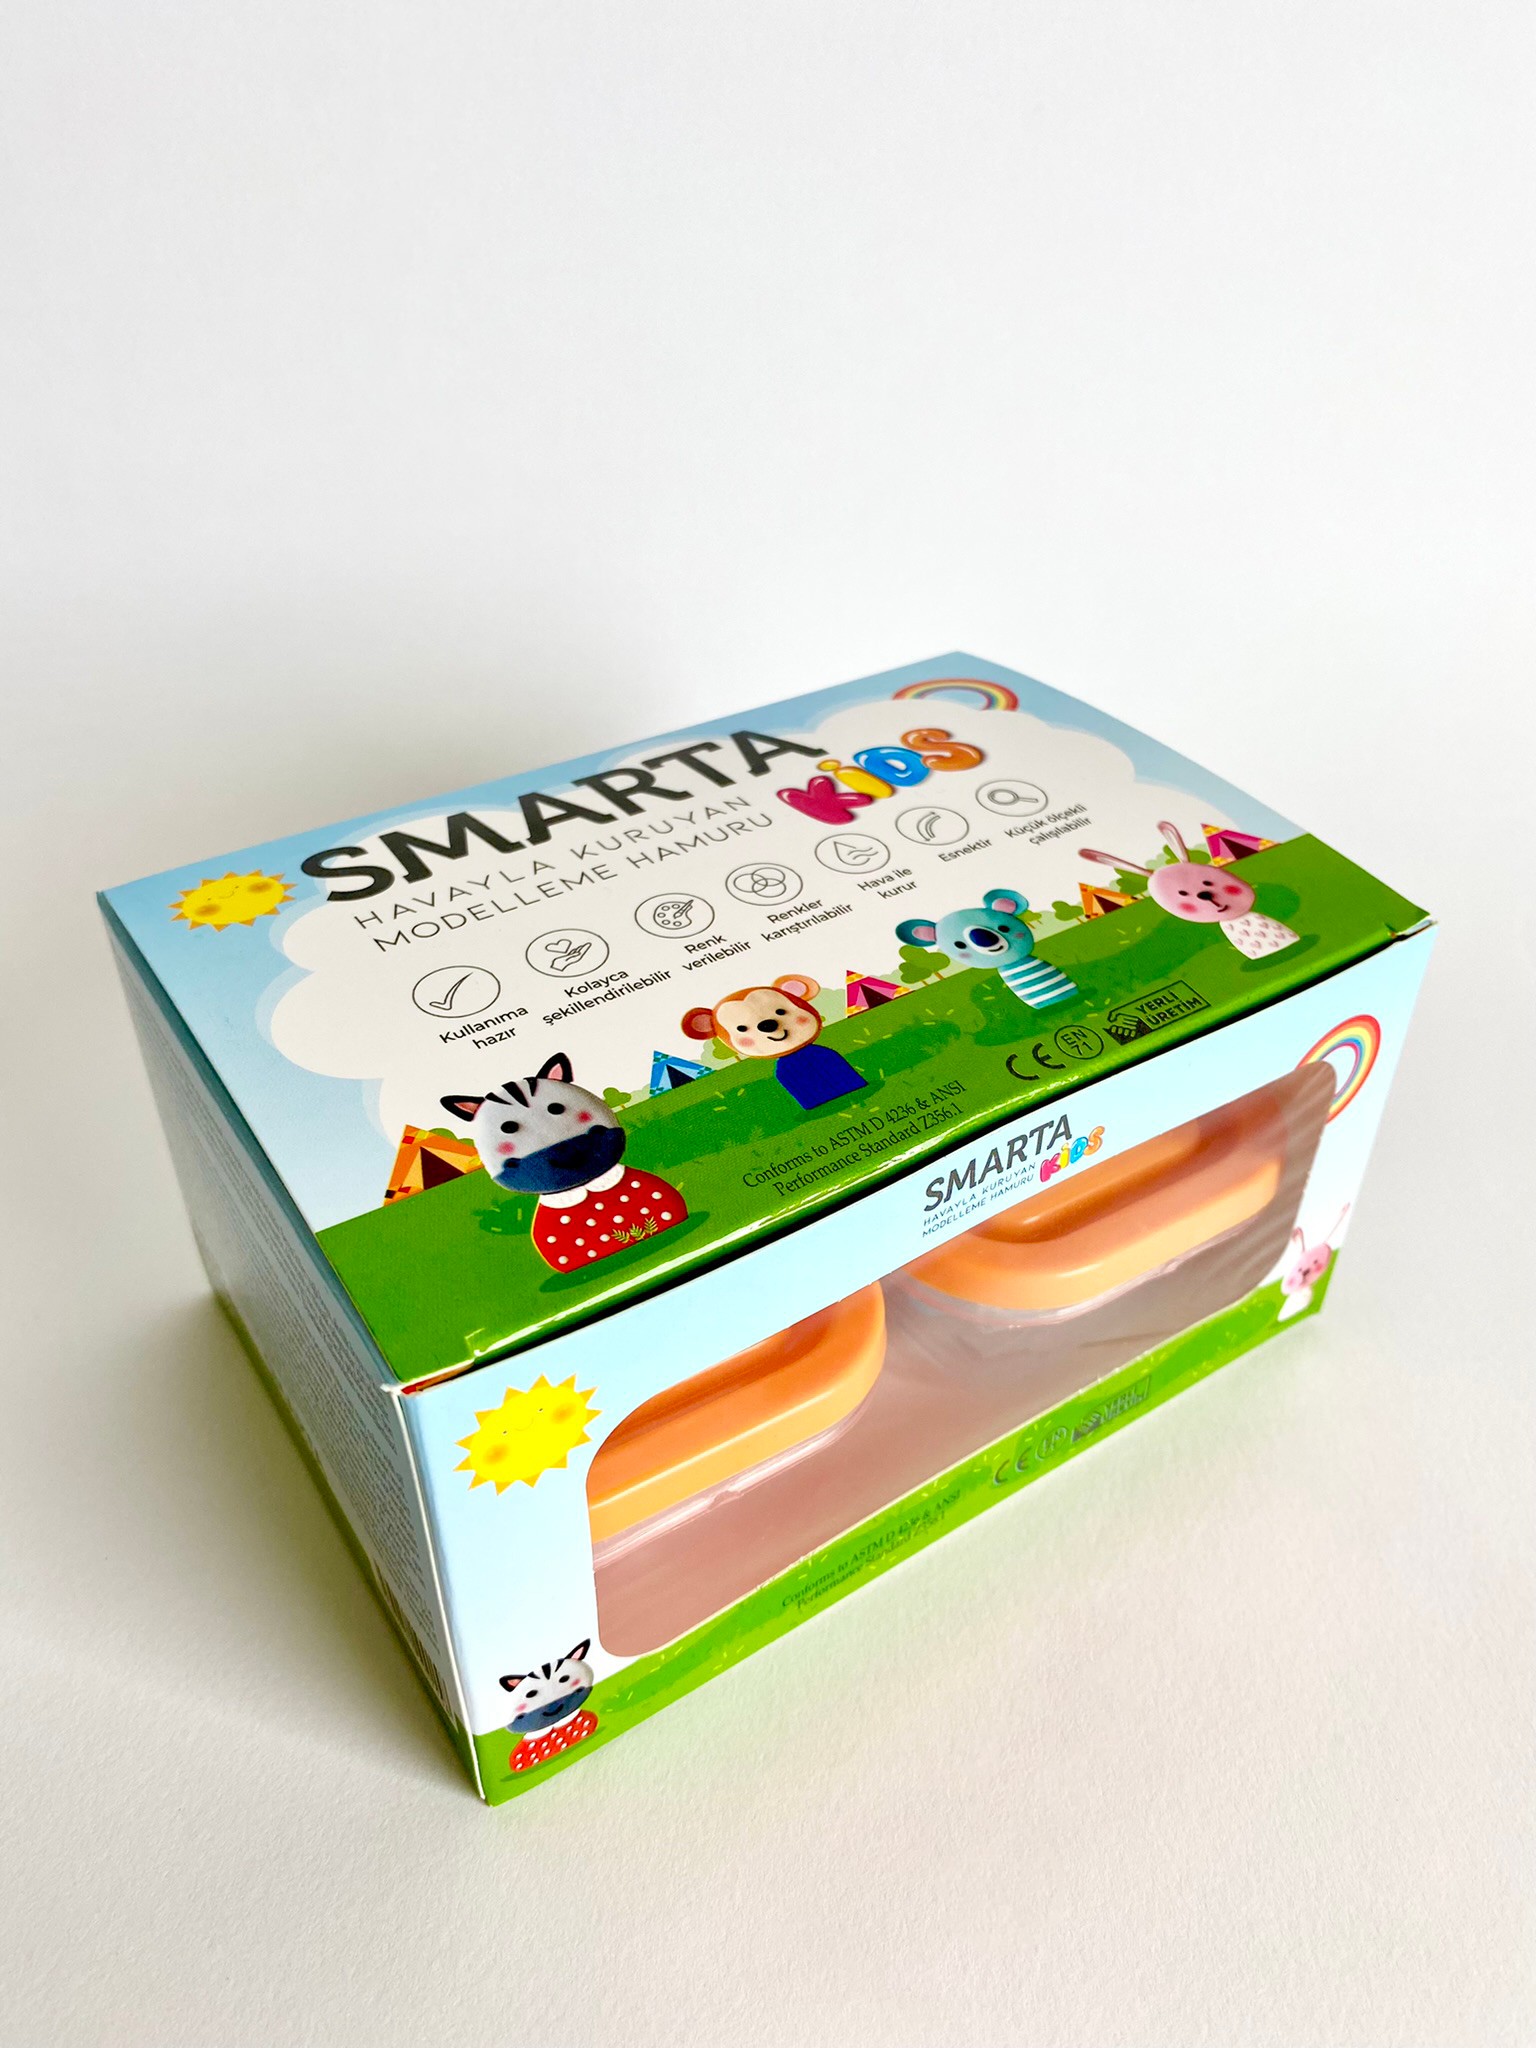 Smarta™ Kids 4 Renkli Oyun Seti